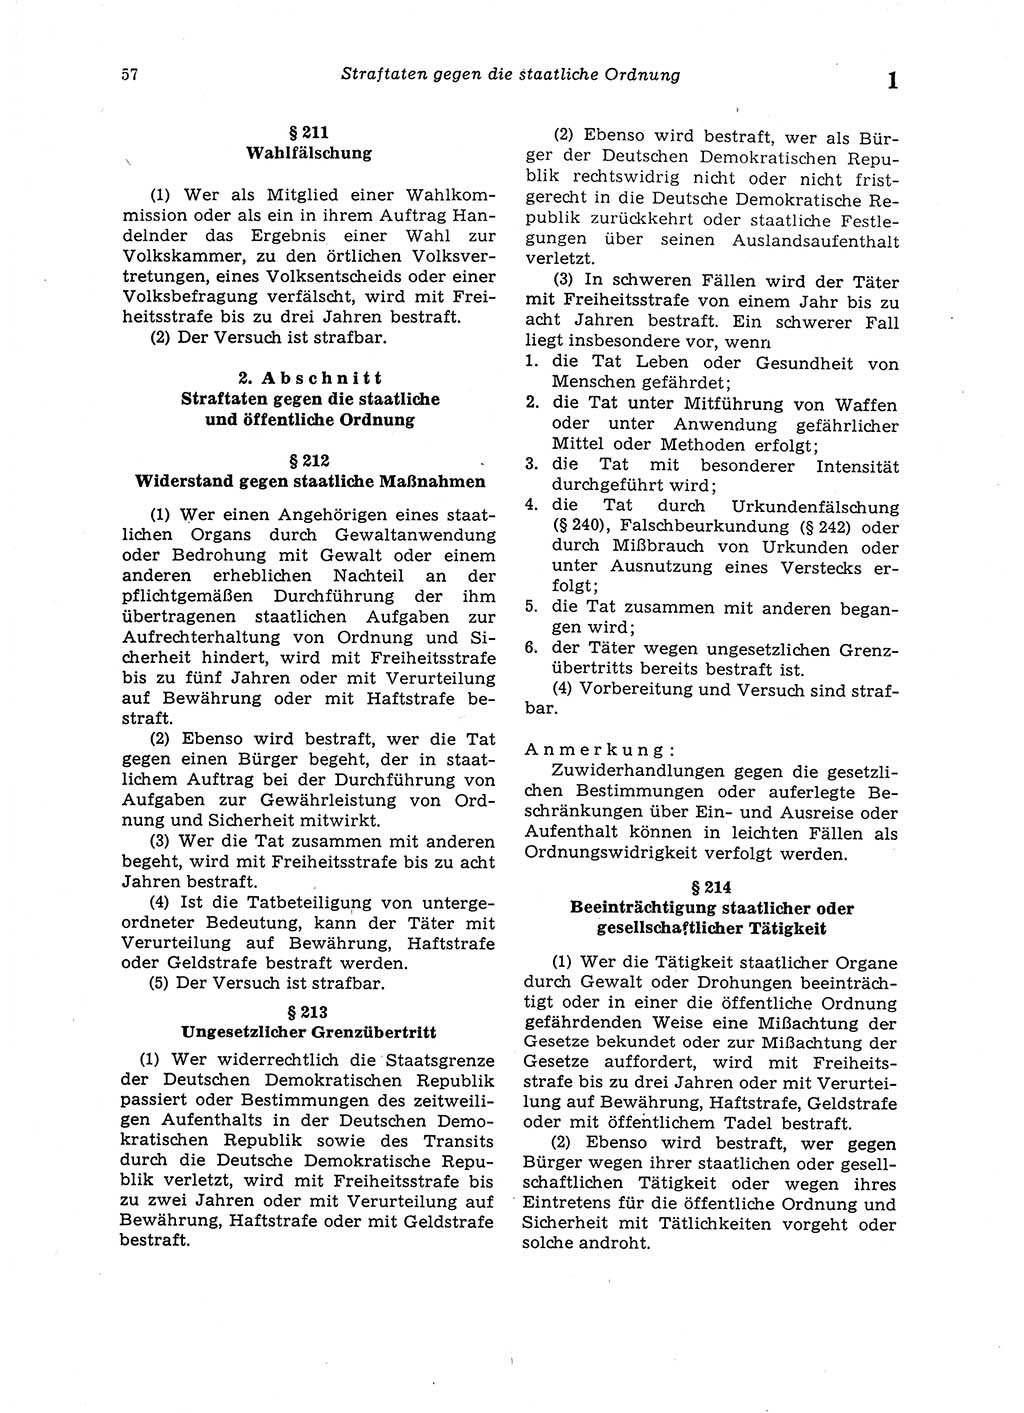 Strafgesetzbuch (StGB) der Deutschen Demokratischen Republik (DDR) 1987, Seite 57 (StGB DDR 1987, S. 57)